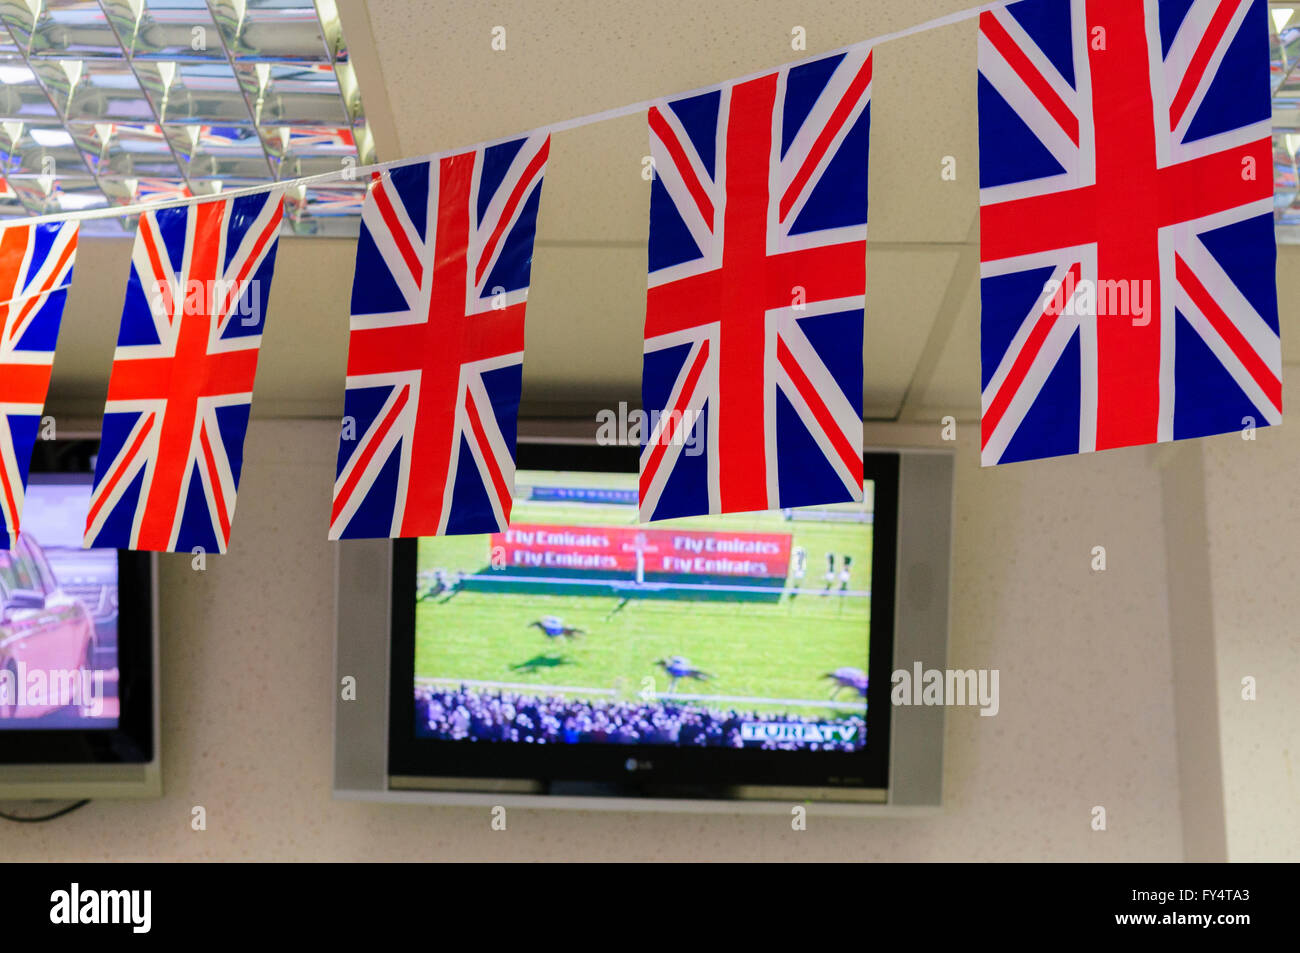 All'interno di un bookmaker con unione bandiera bunting davanti alla TV schermi televisivi e monitor Foto Stock